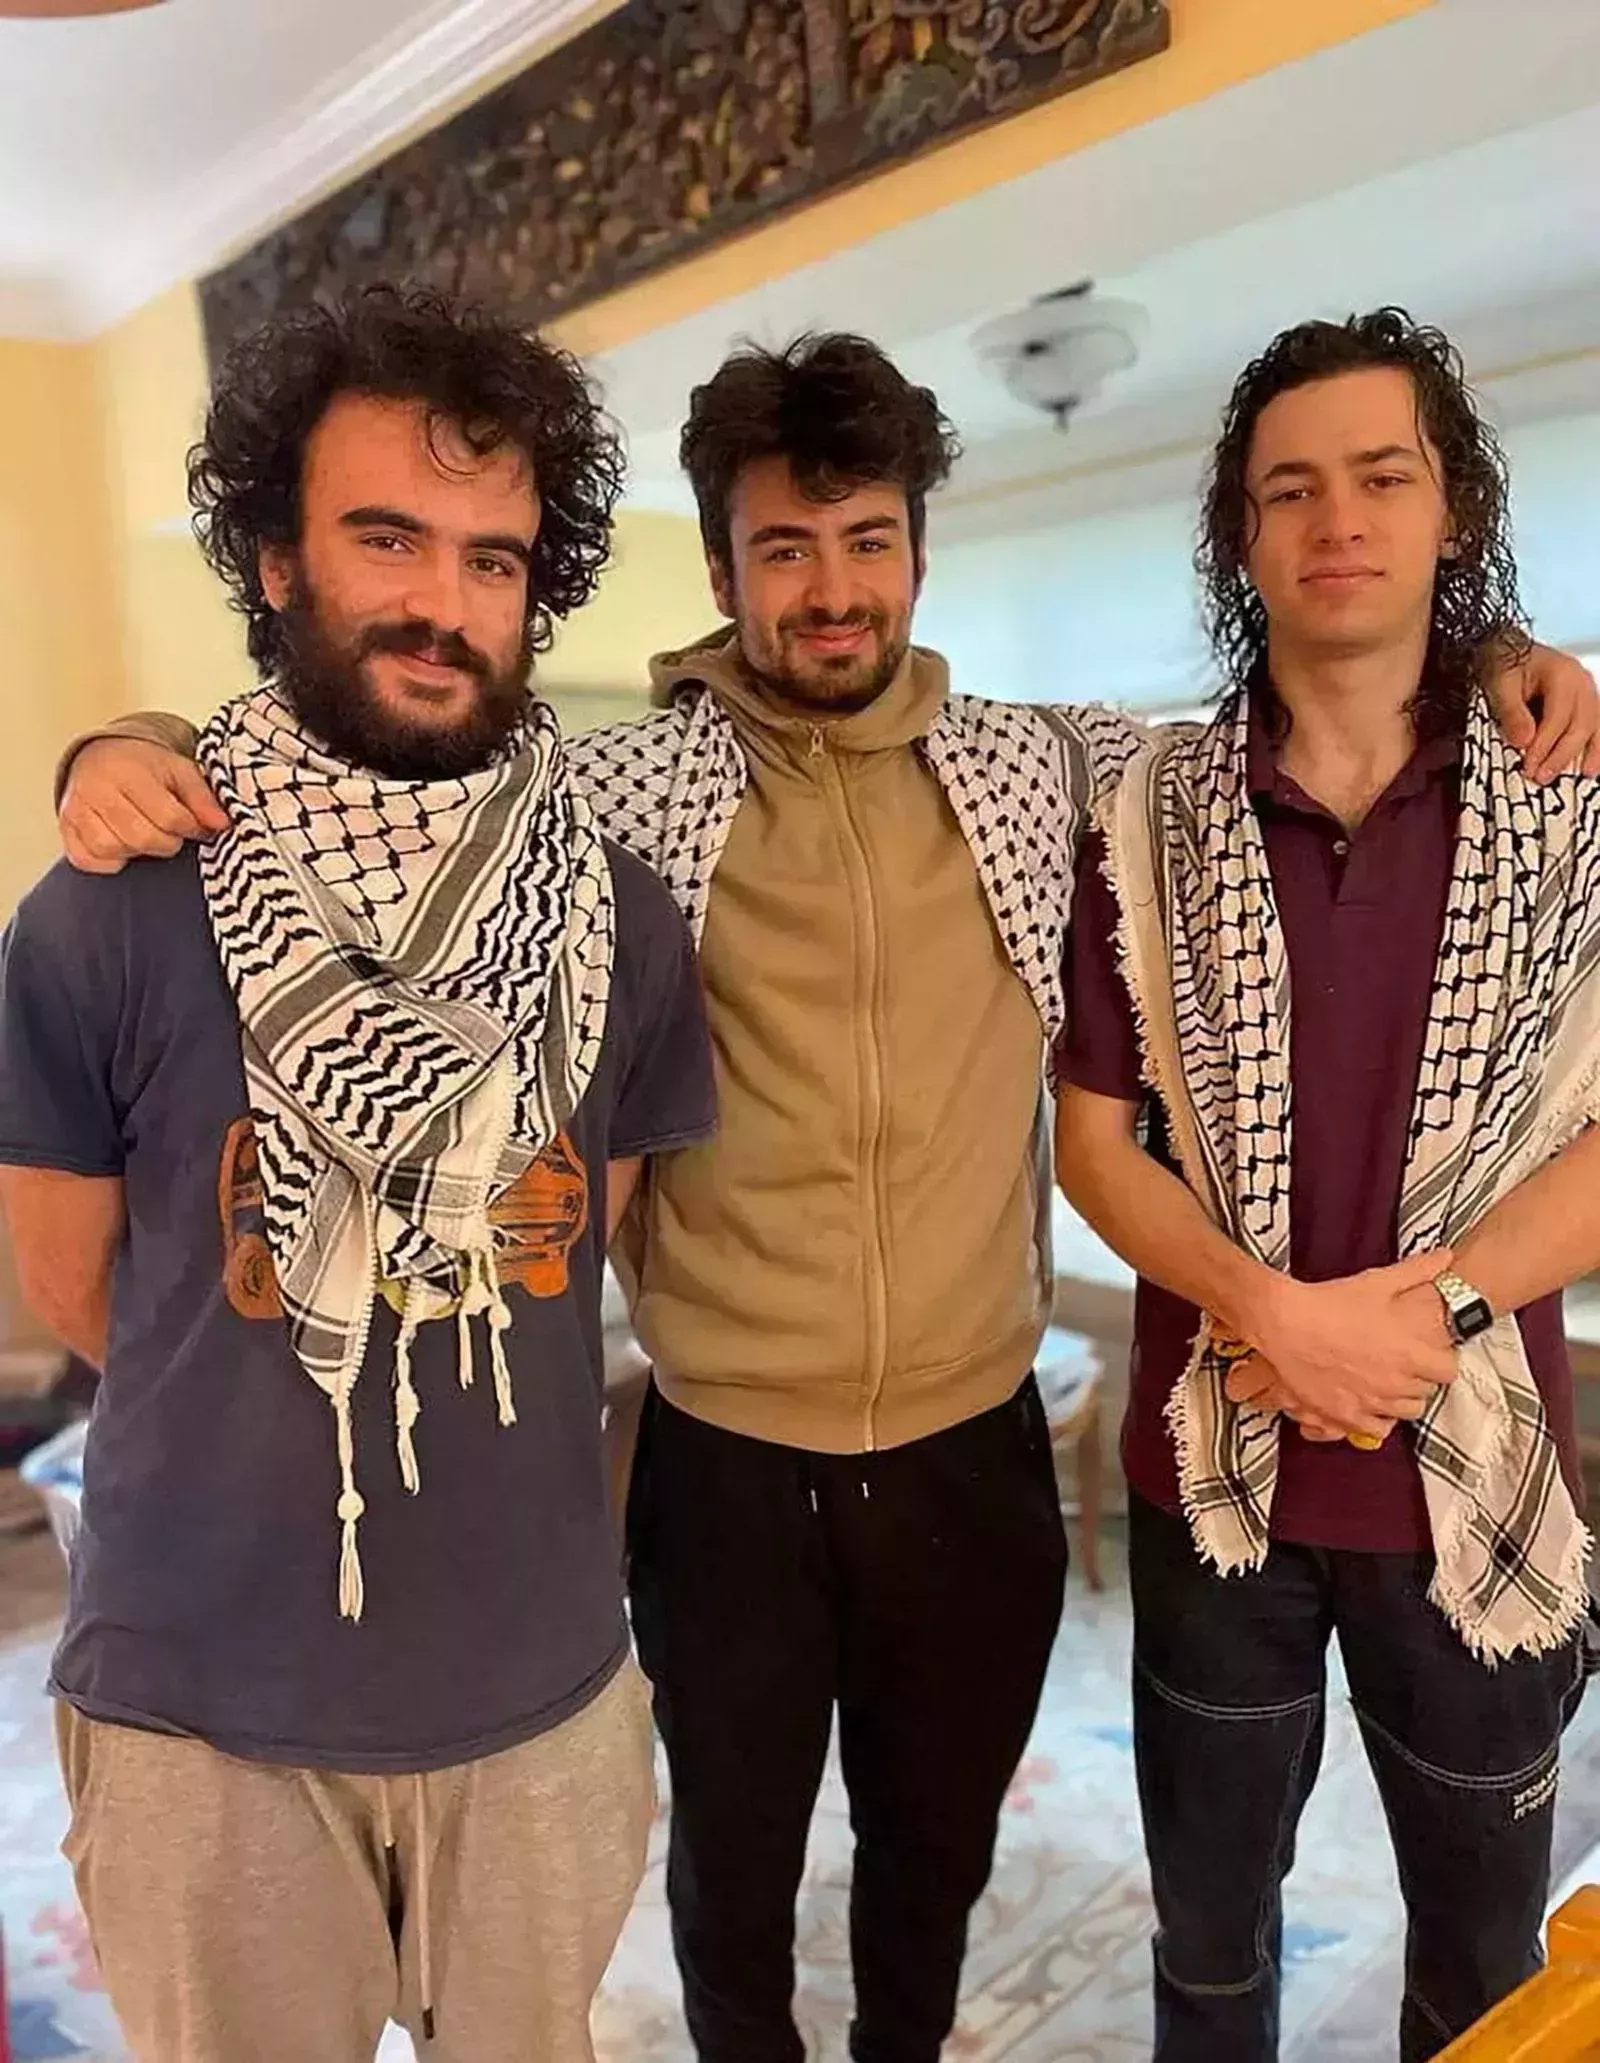 Soy uno de los estudiantes palestinos tiroteados en Vermont. Un alto el fuego en Gaza es el camino hacia la curación.